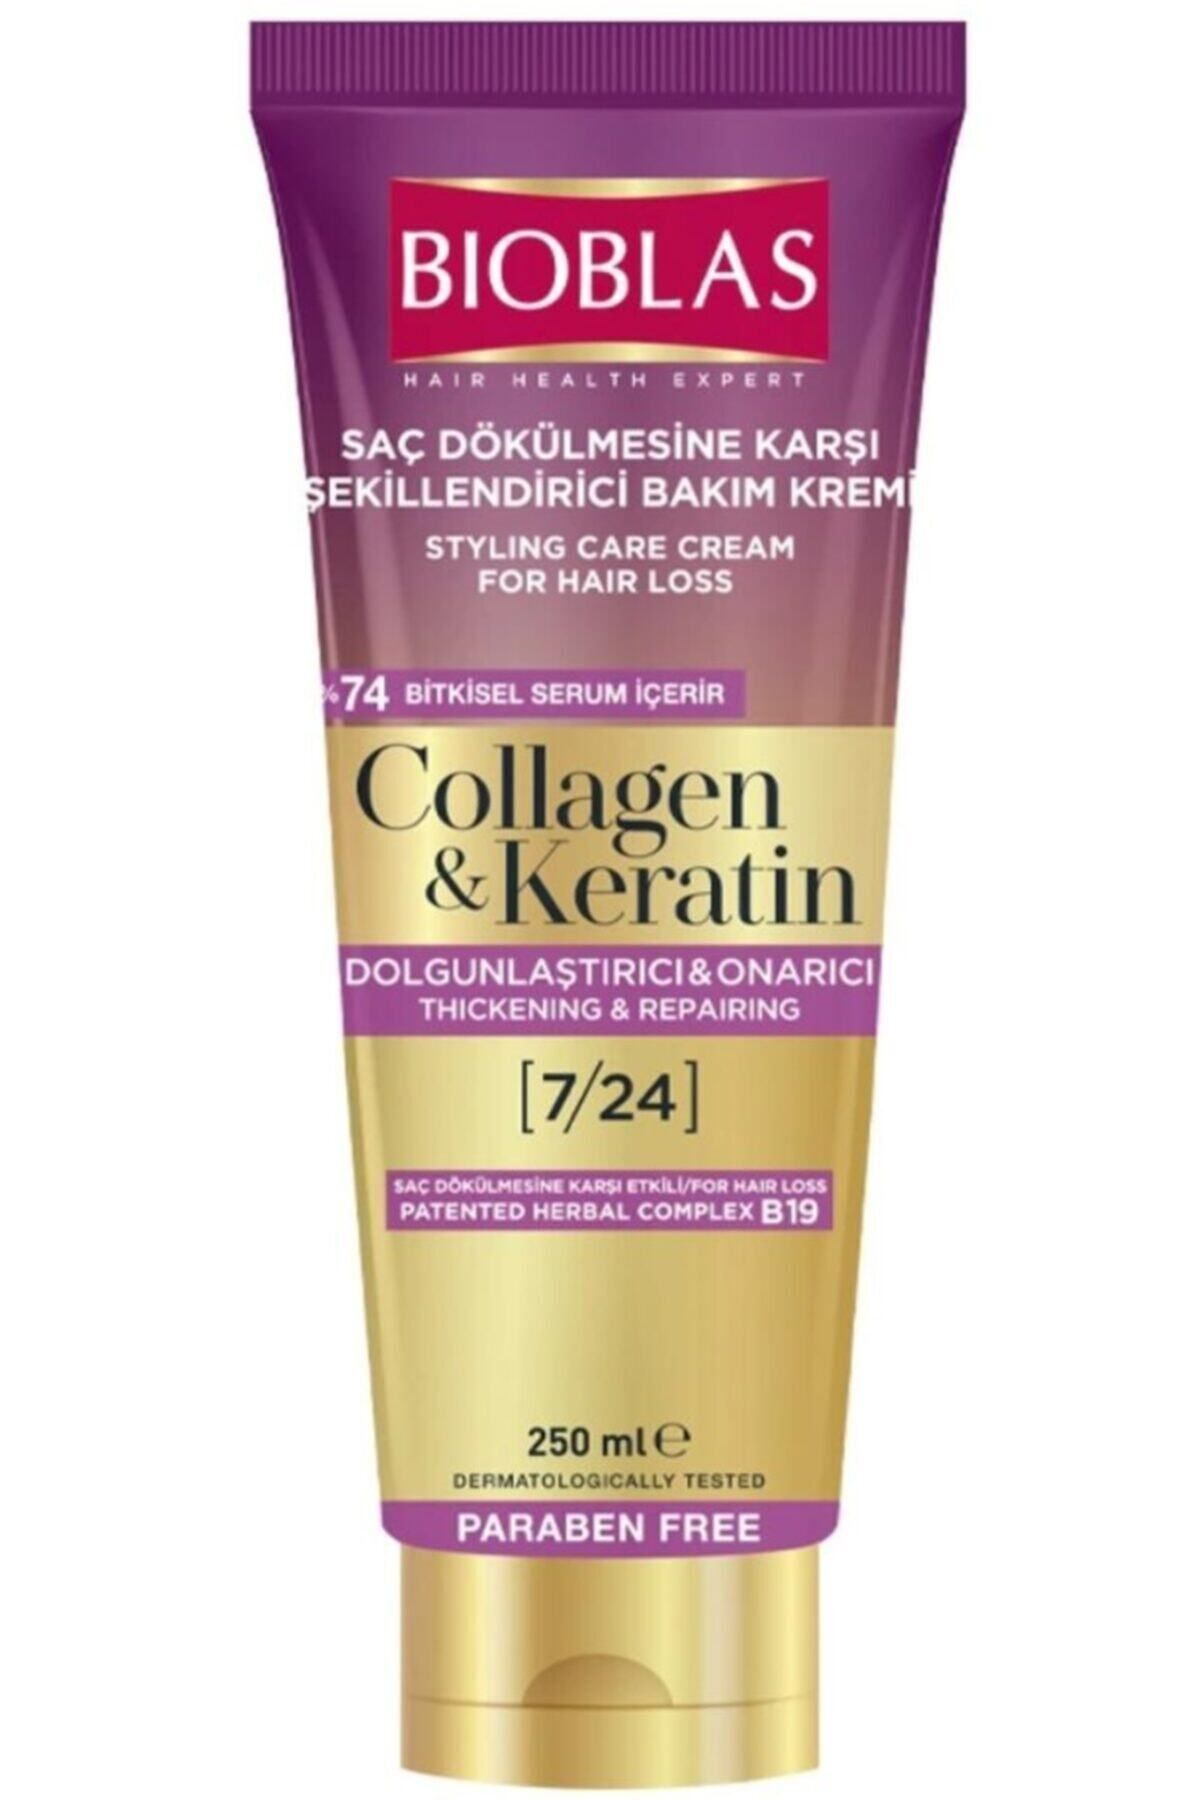 Bioblas Saç Dökülmesine Karşı Şekillendirici Bakım Kremi 250 ml Collagen - Keratin